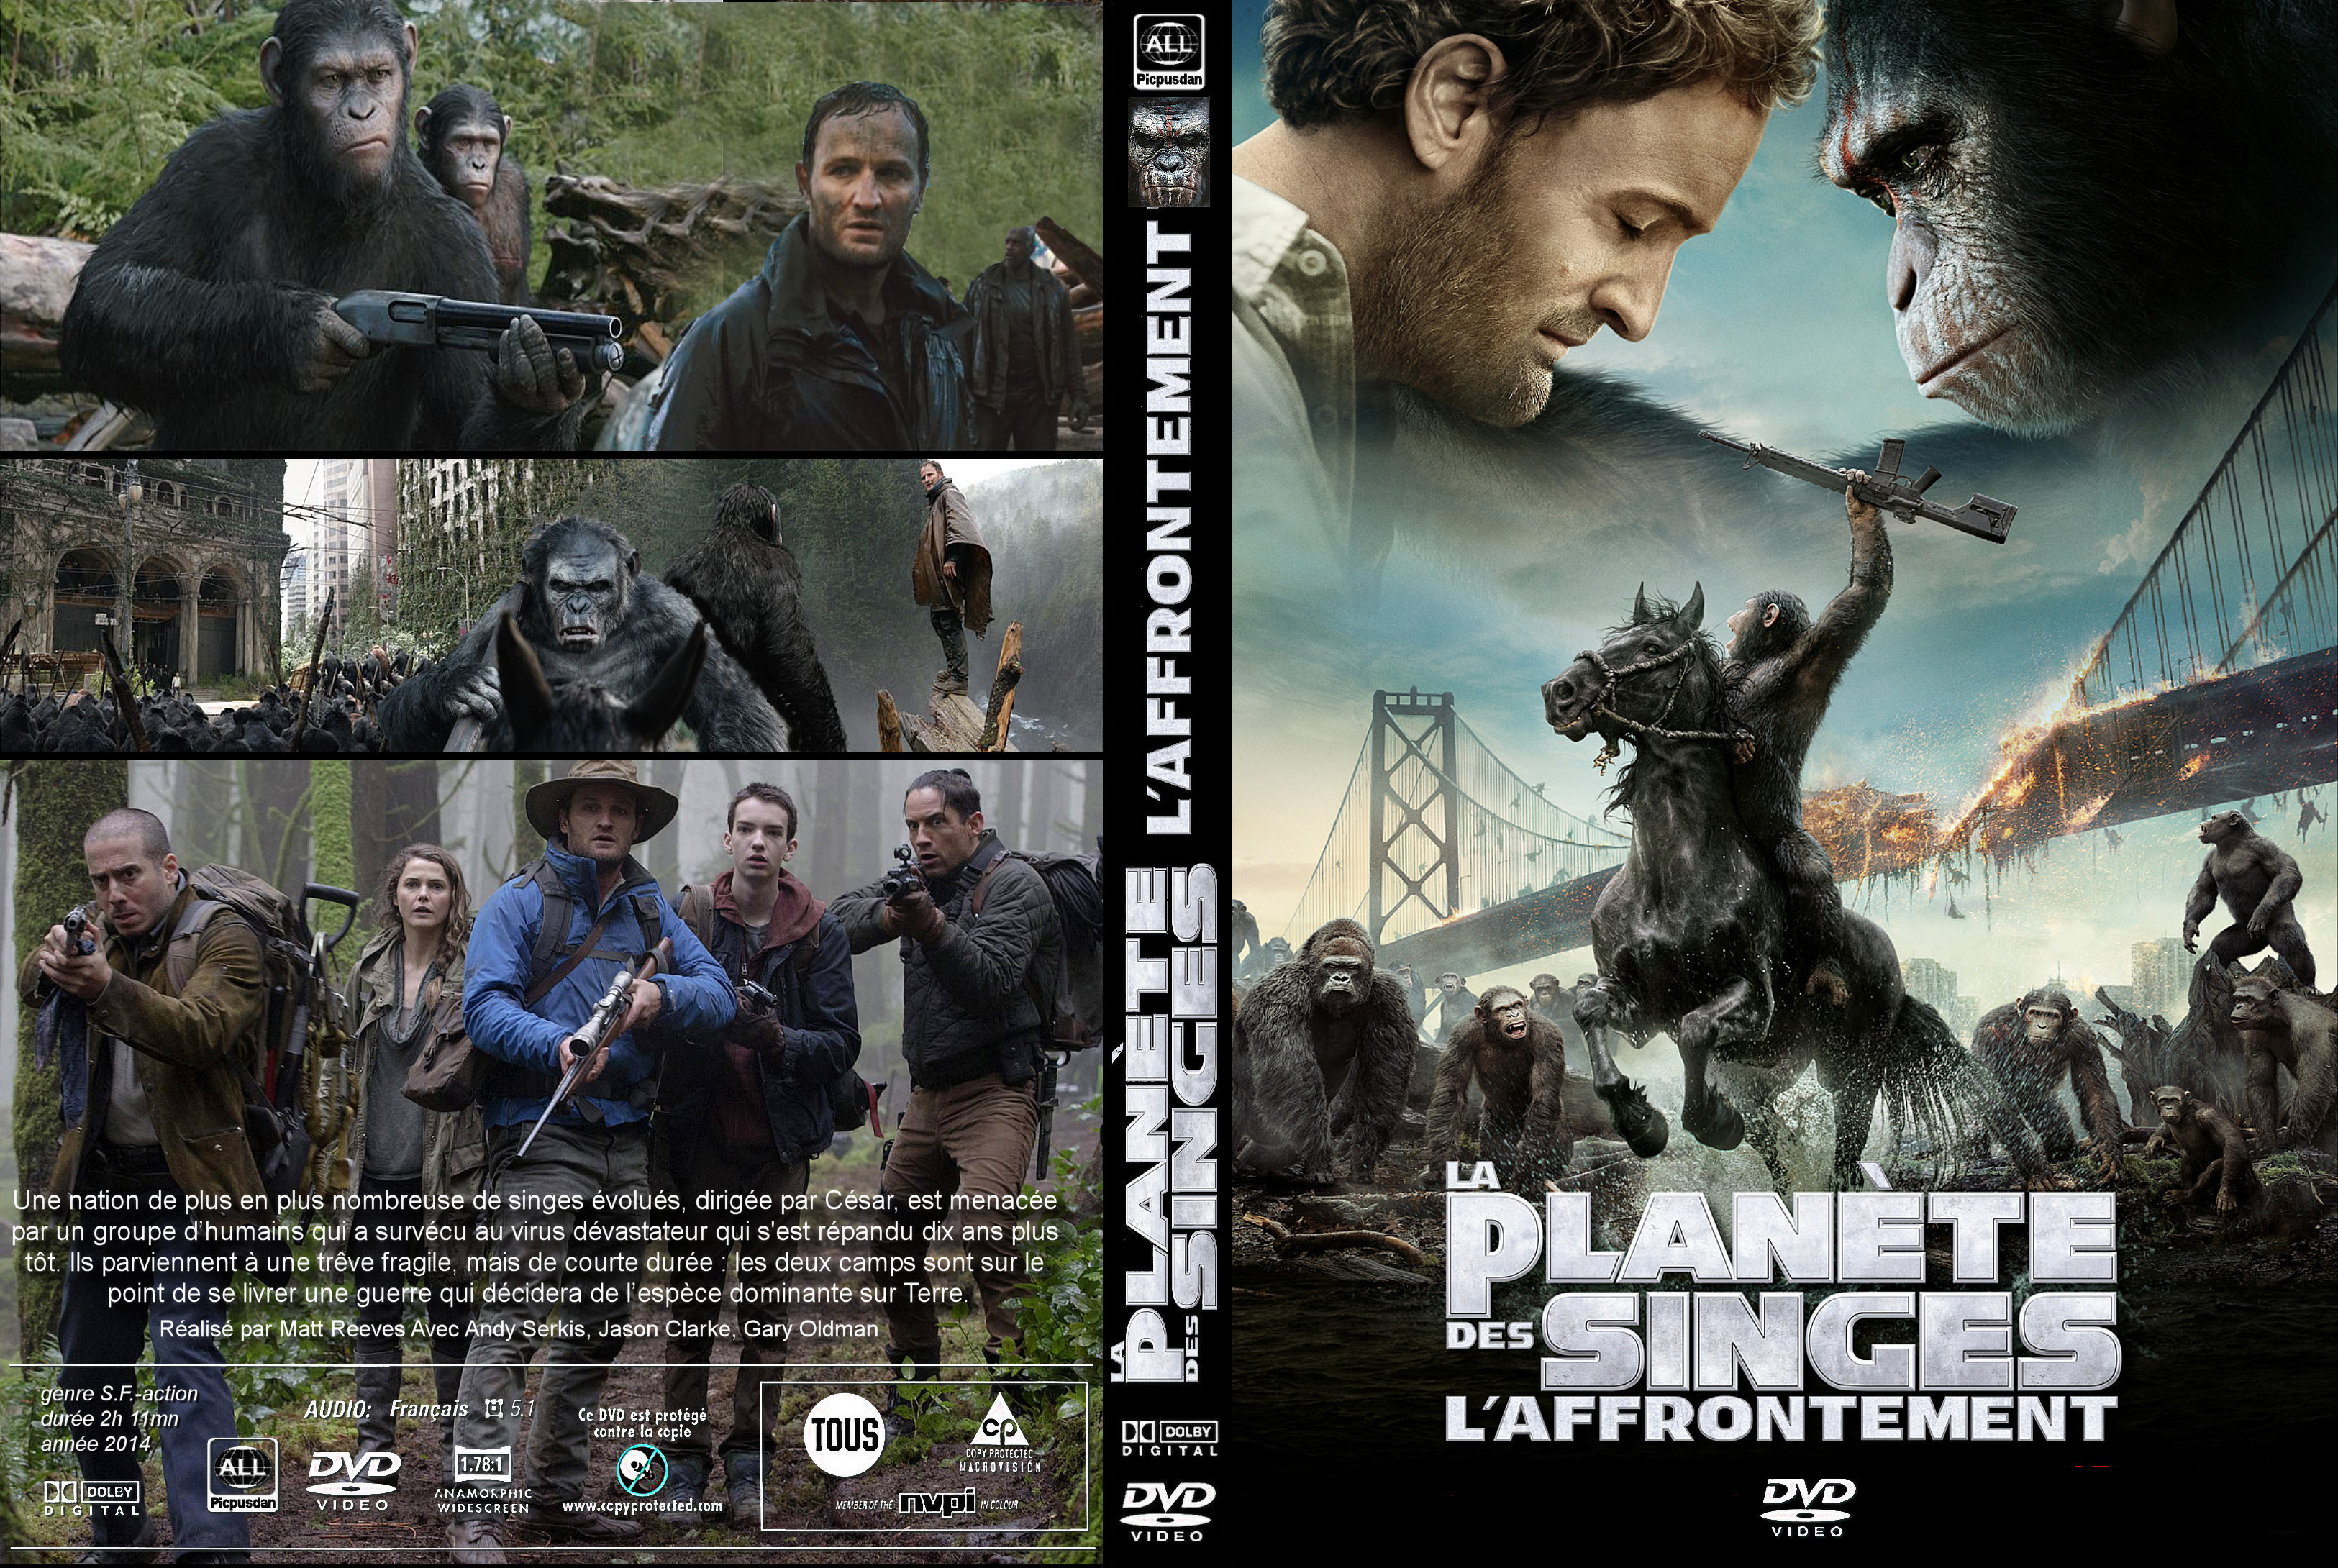 Jaquette DVD La Plante des singes : l